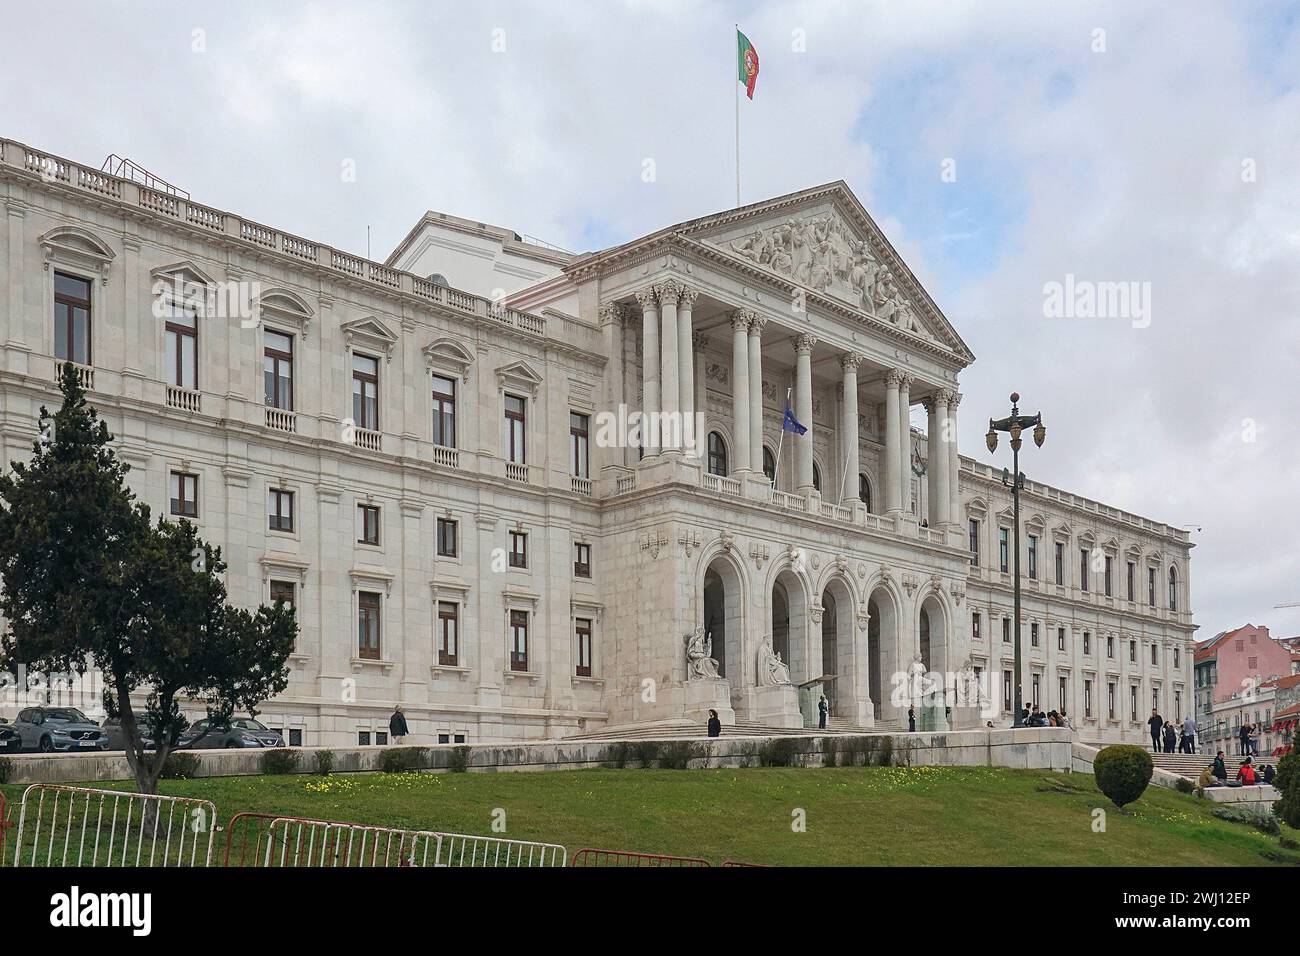 Portugal, Lisbonne, Palacio de Sao Bento - Palais Saint Benoît - à Lisbonne est le siège de l'Assemblée de la République portugaise, le Parlement Banque D'Images